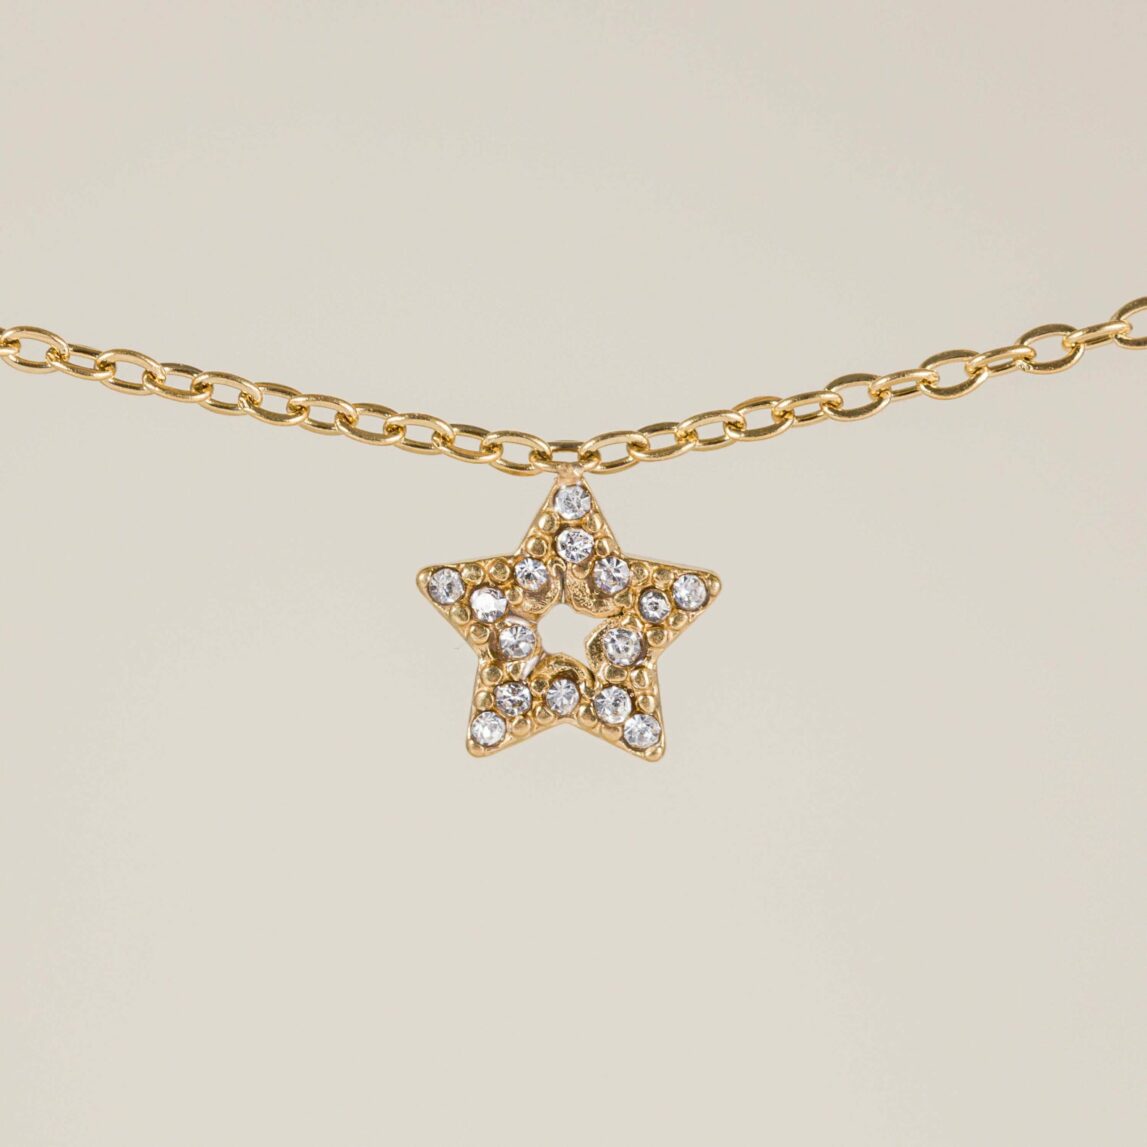 La cadena Estrella prince es una cadena de estrella llena de circonitas blancas que es perfecta para dar luz a tu rostro. Una cadena versátil y especial.